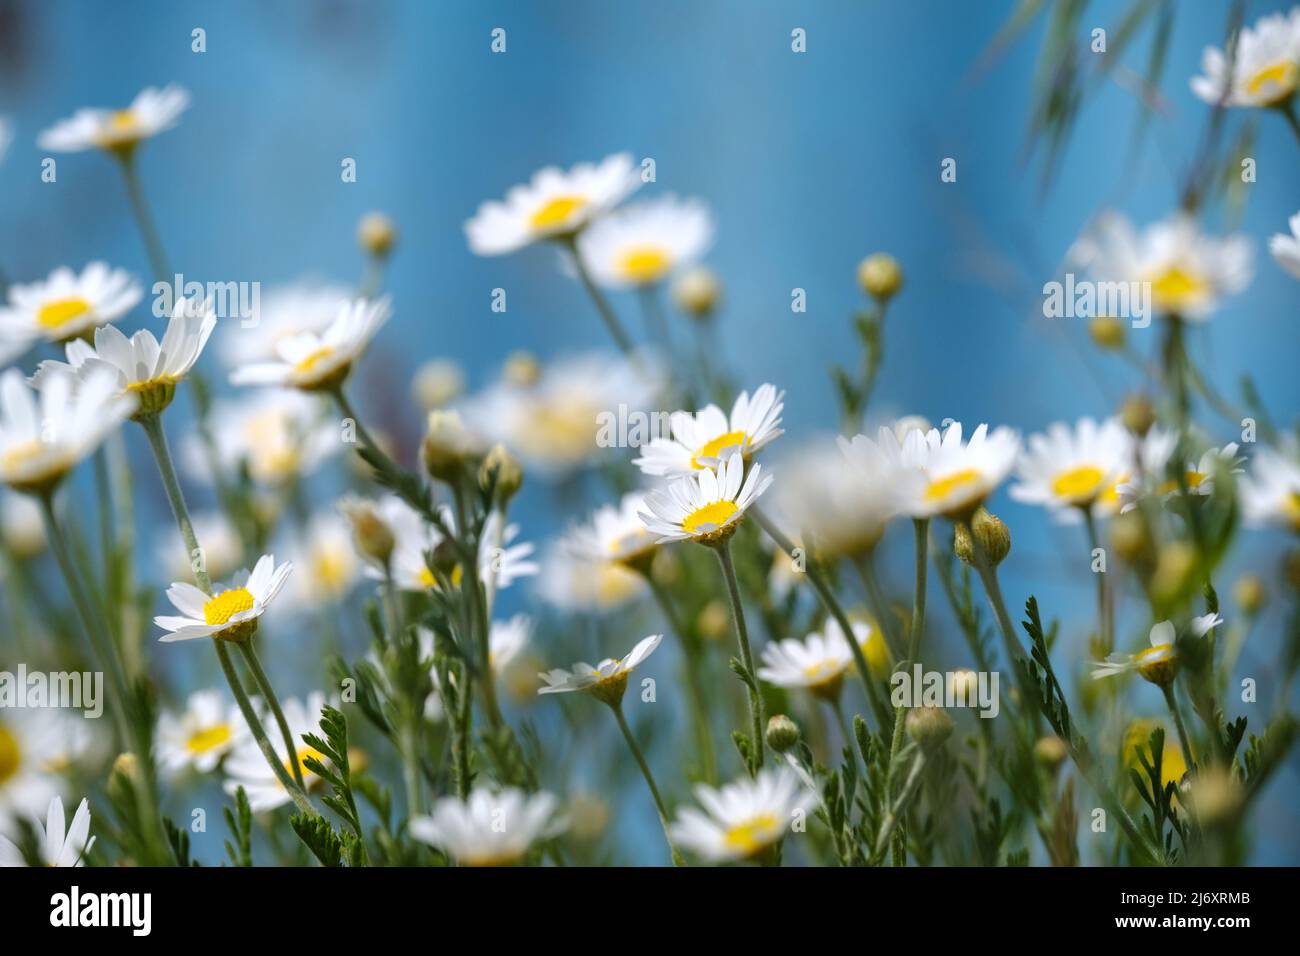 margaritas blancas sobre fondo azul. Daisy flor en prado verde. Hermoso prado en primavera lleno de margaritas con flor de color amarillo blanco Foto de stock